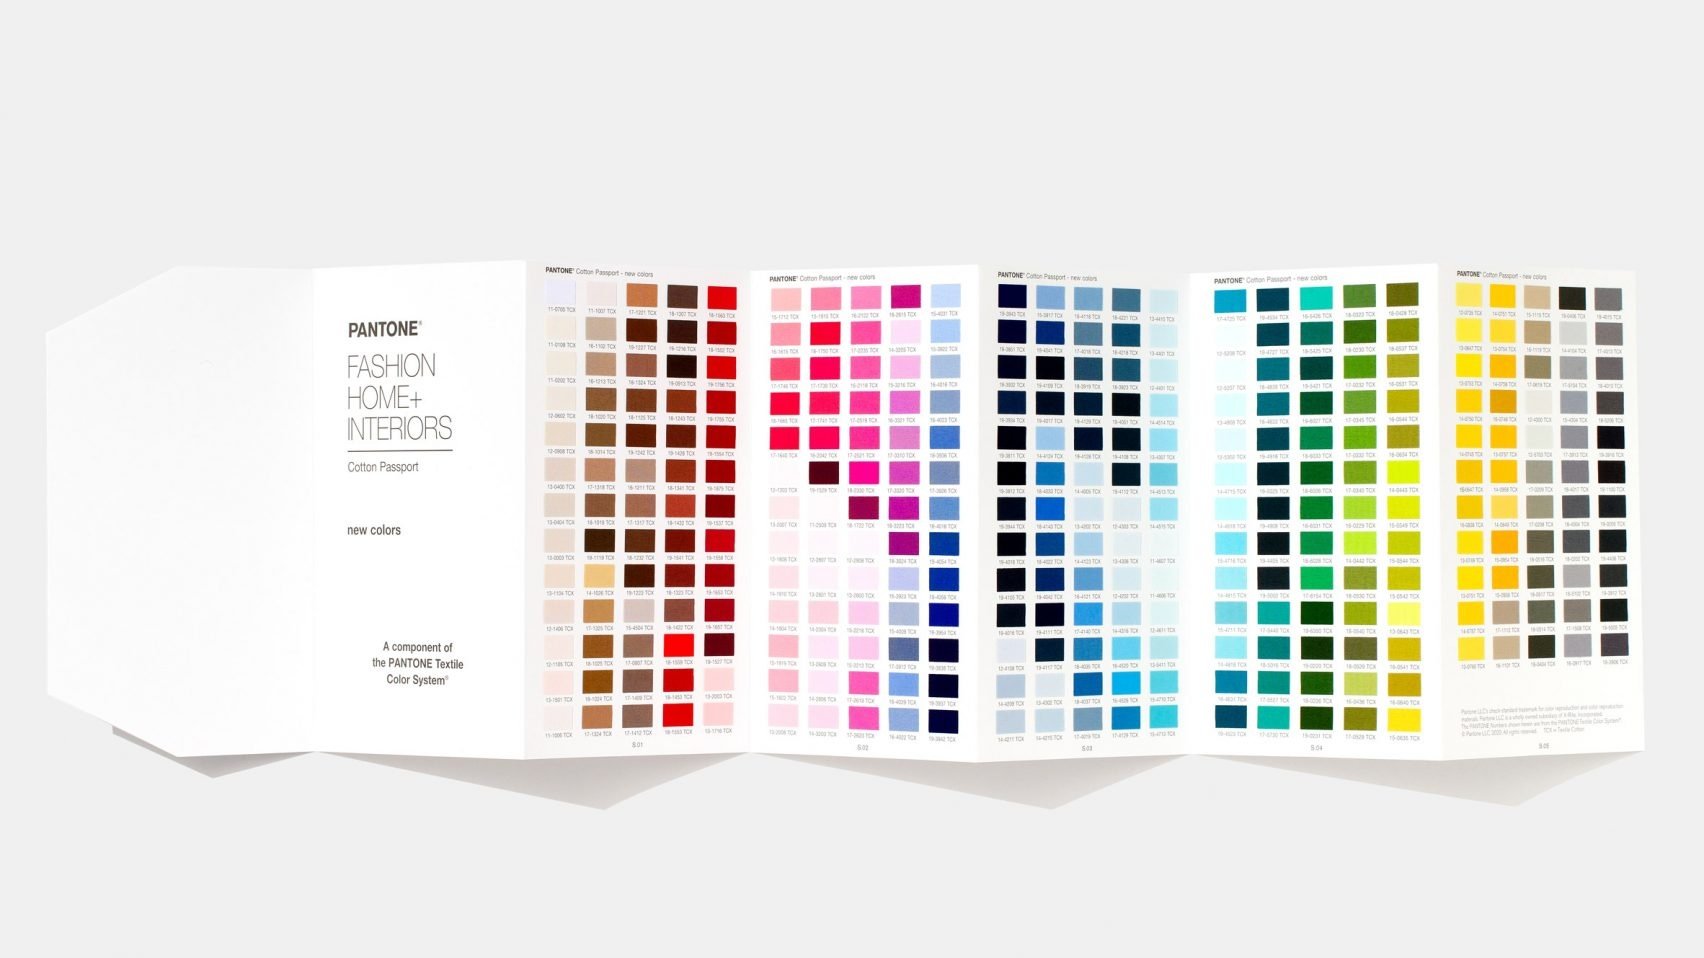 Pantone giới thiệu 300 màu sắc mới theo xu hướng